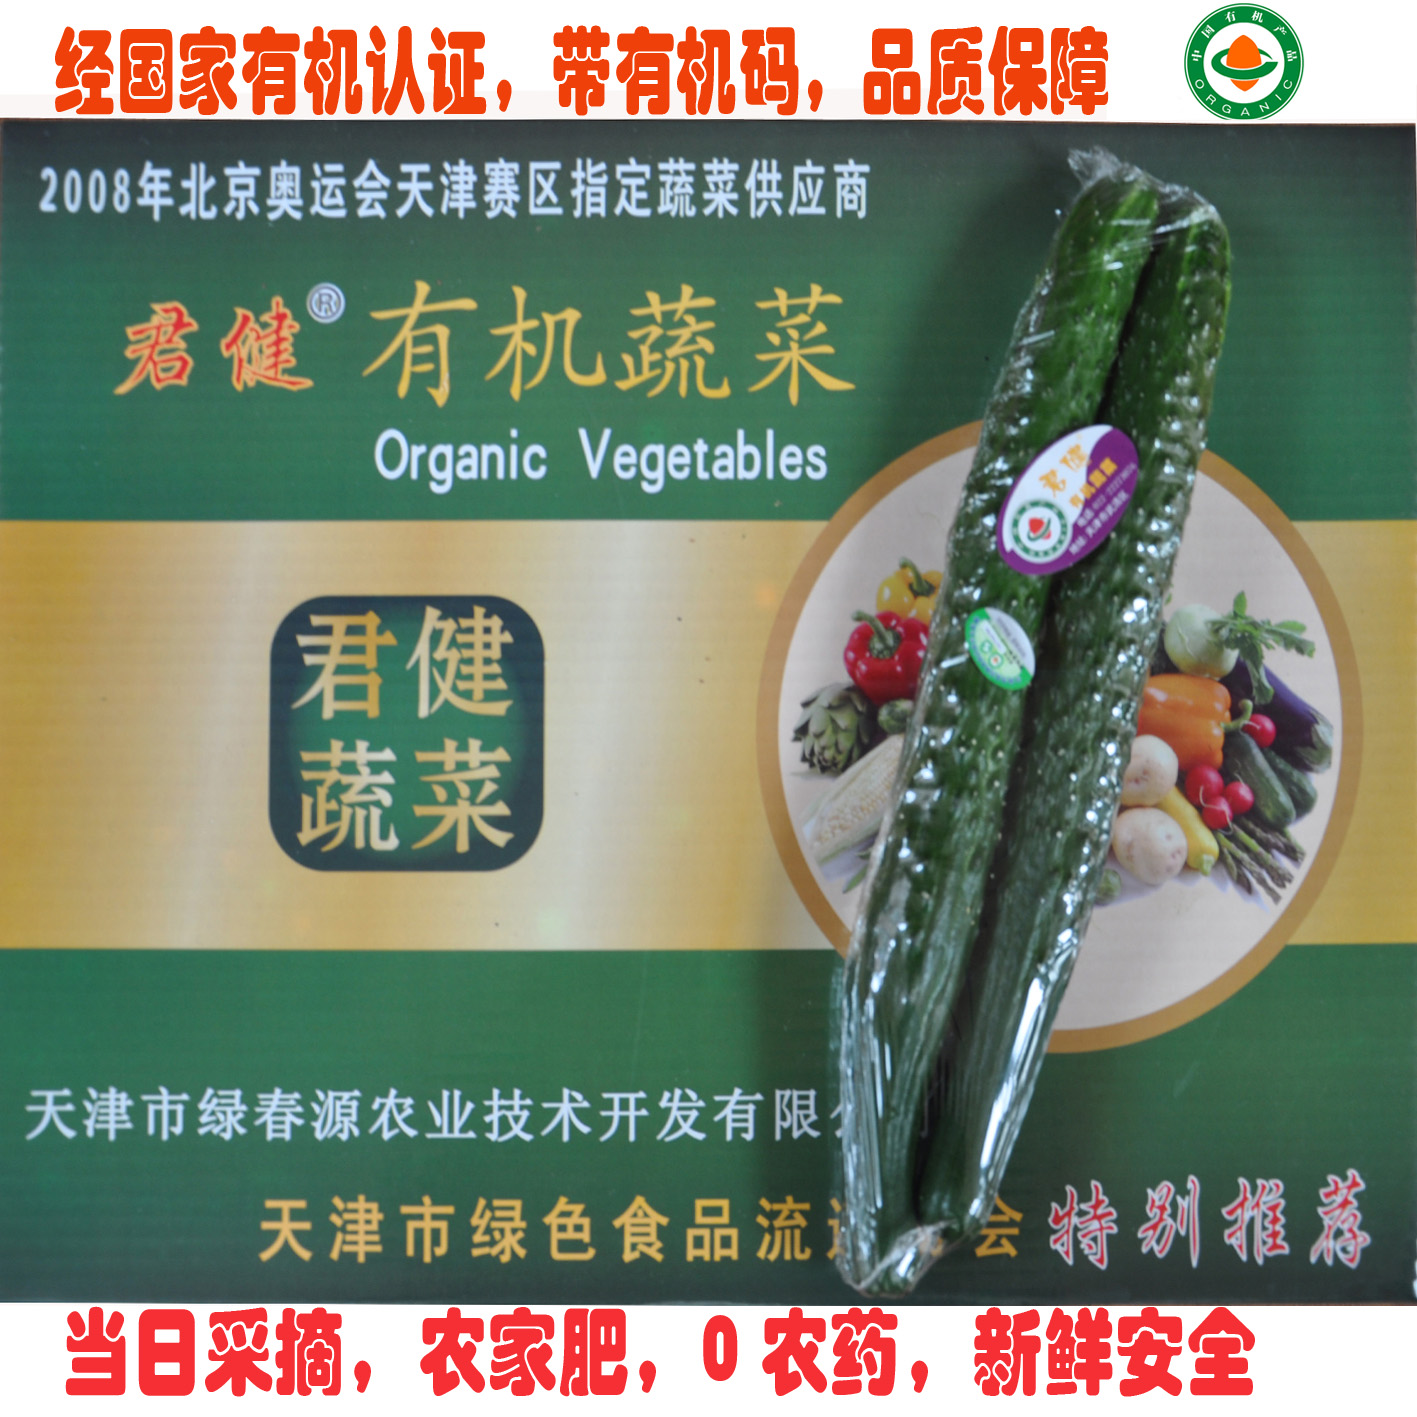 生鲜蔬菜 长黄瓜 绿黄瓜 有机蔬菜天津 同城配送 无农药食用